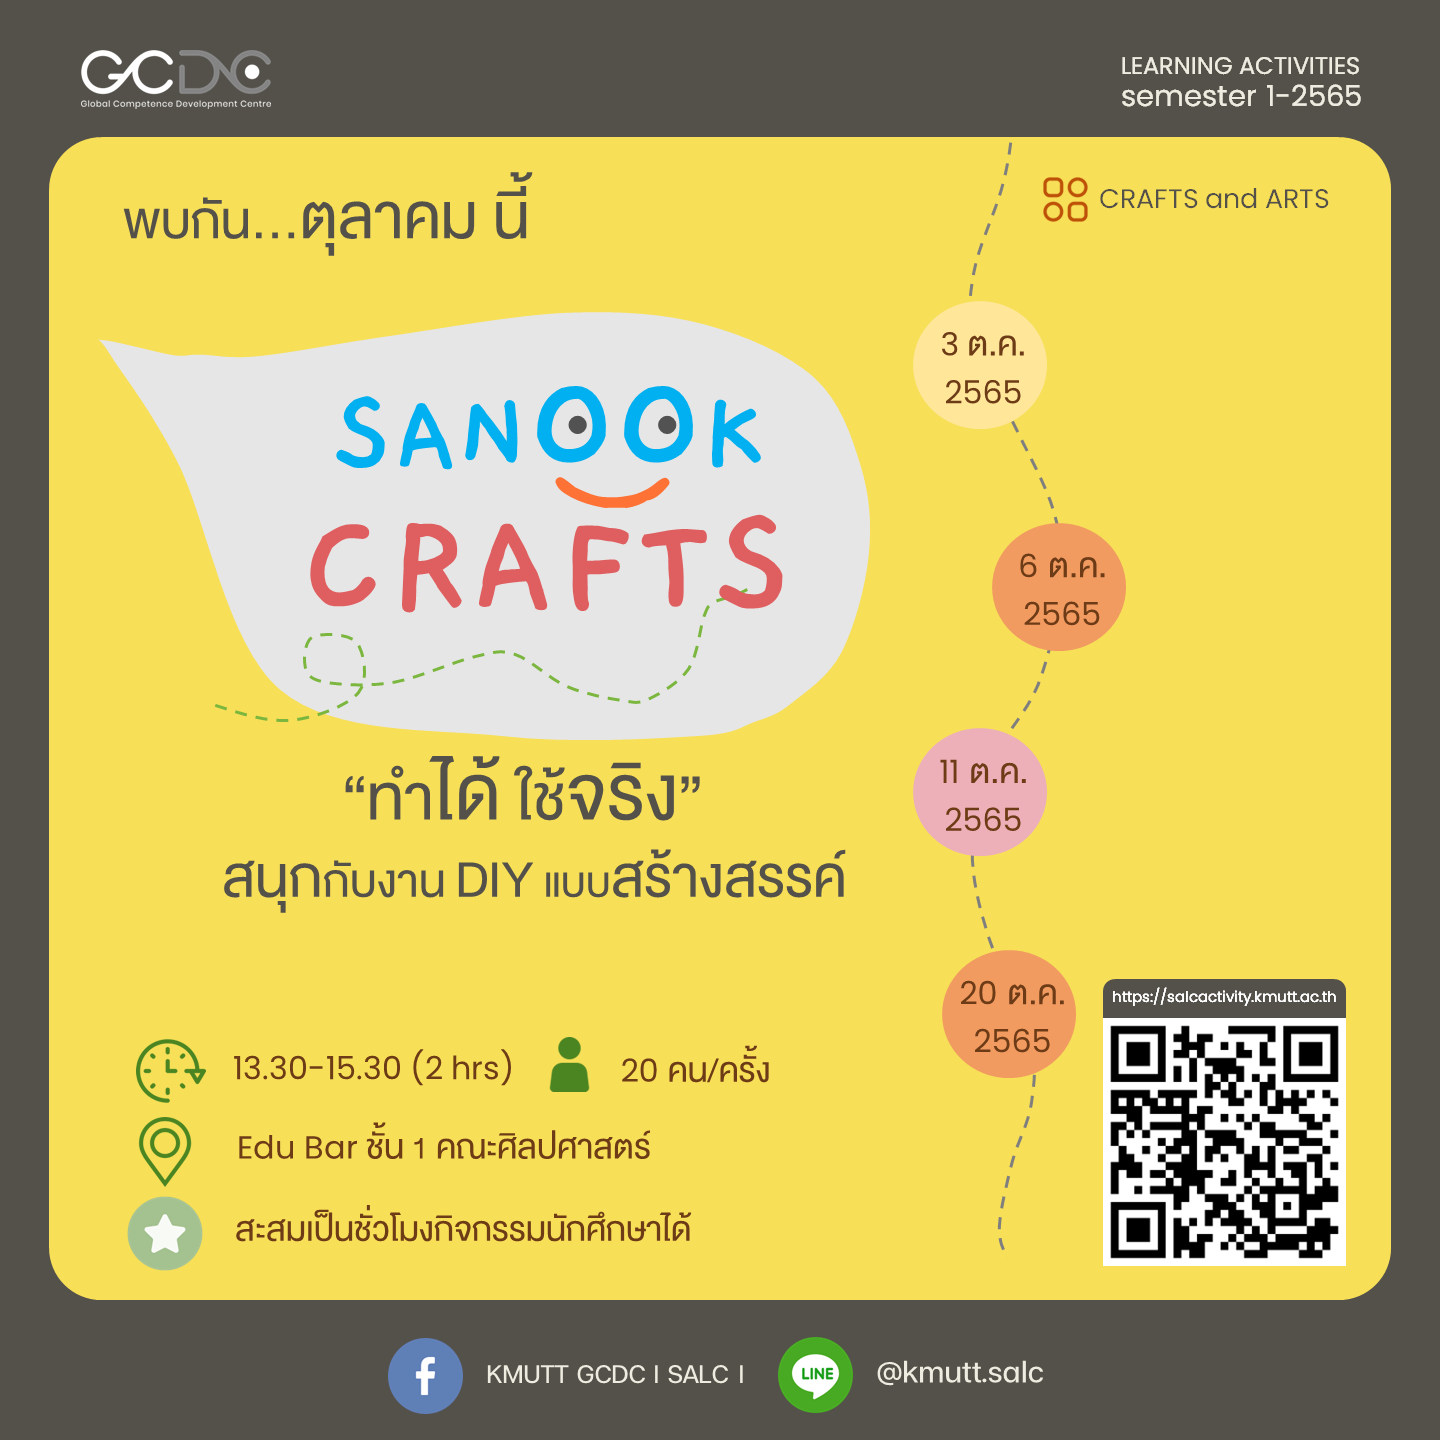 กิจกรรม: Sanook Crafts (DIY)